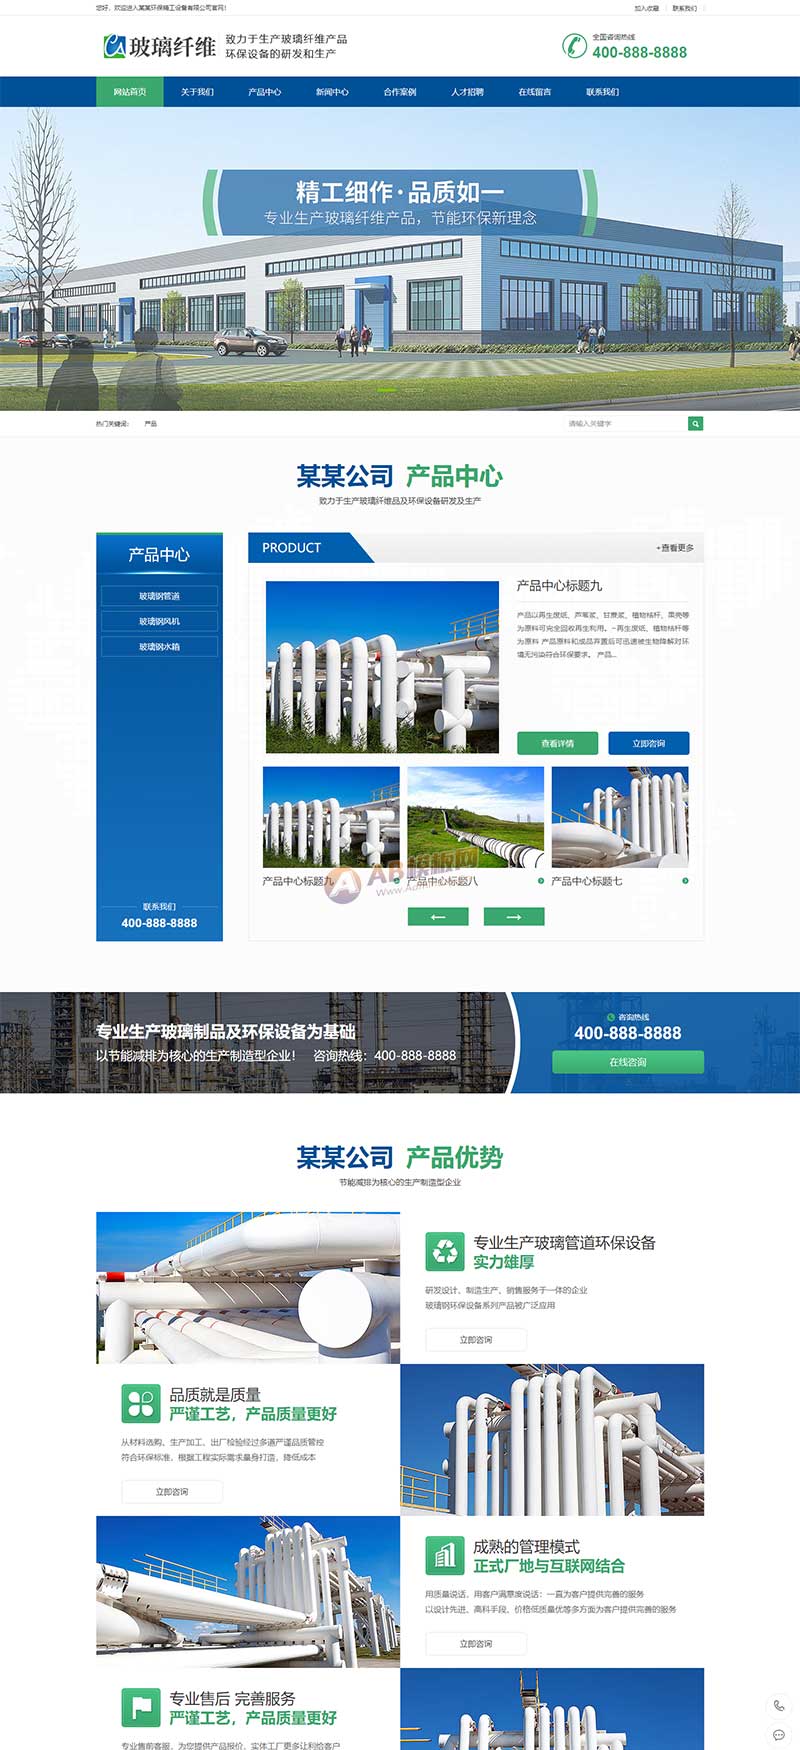 (PC+WAP)营销型环保设备网站源码蓝色玻璃纤维制品网站pbootcms模板-1